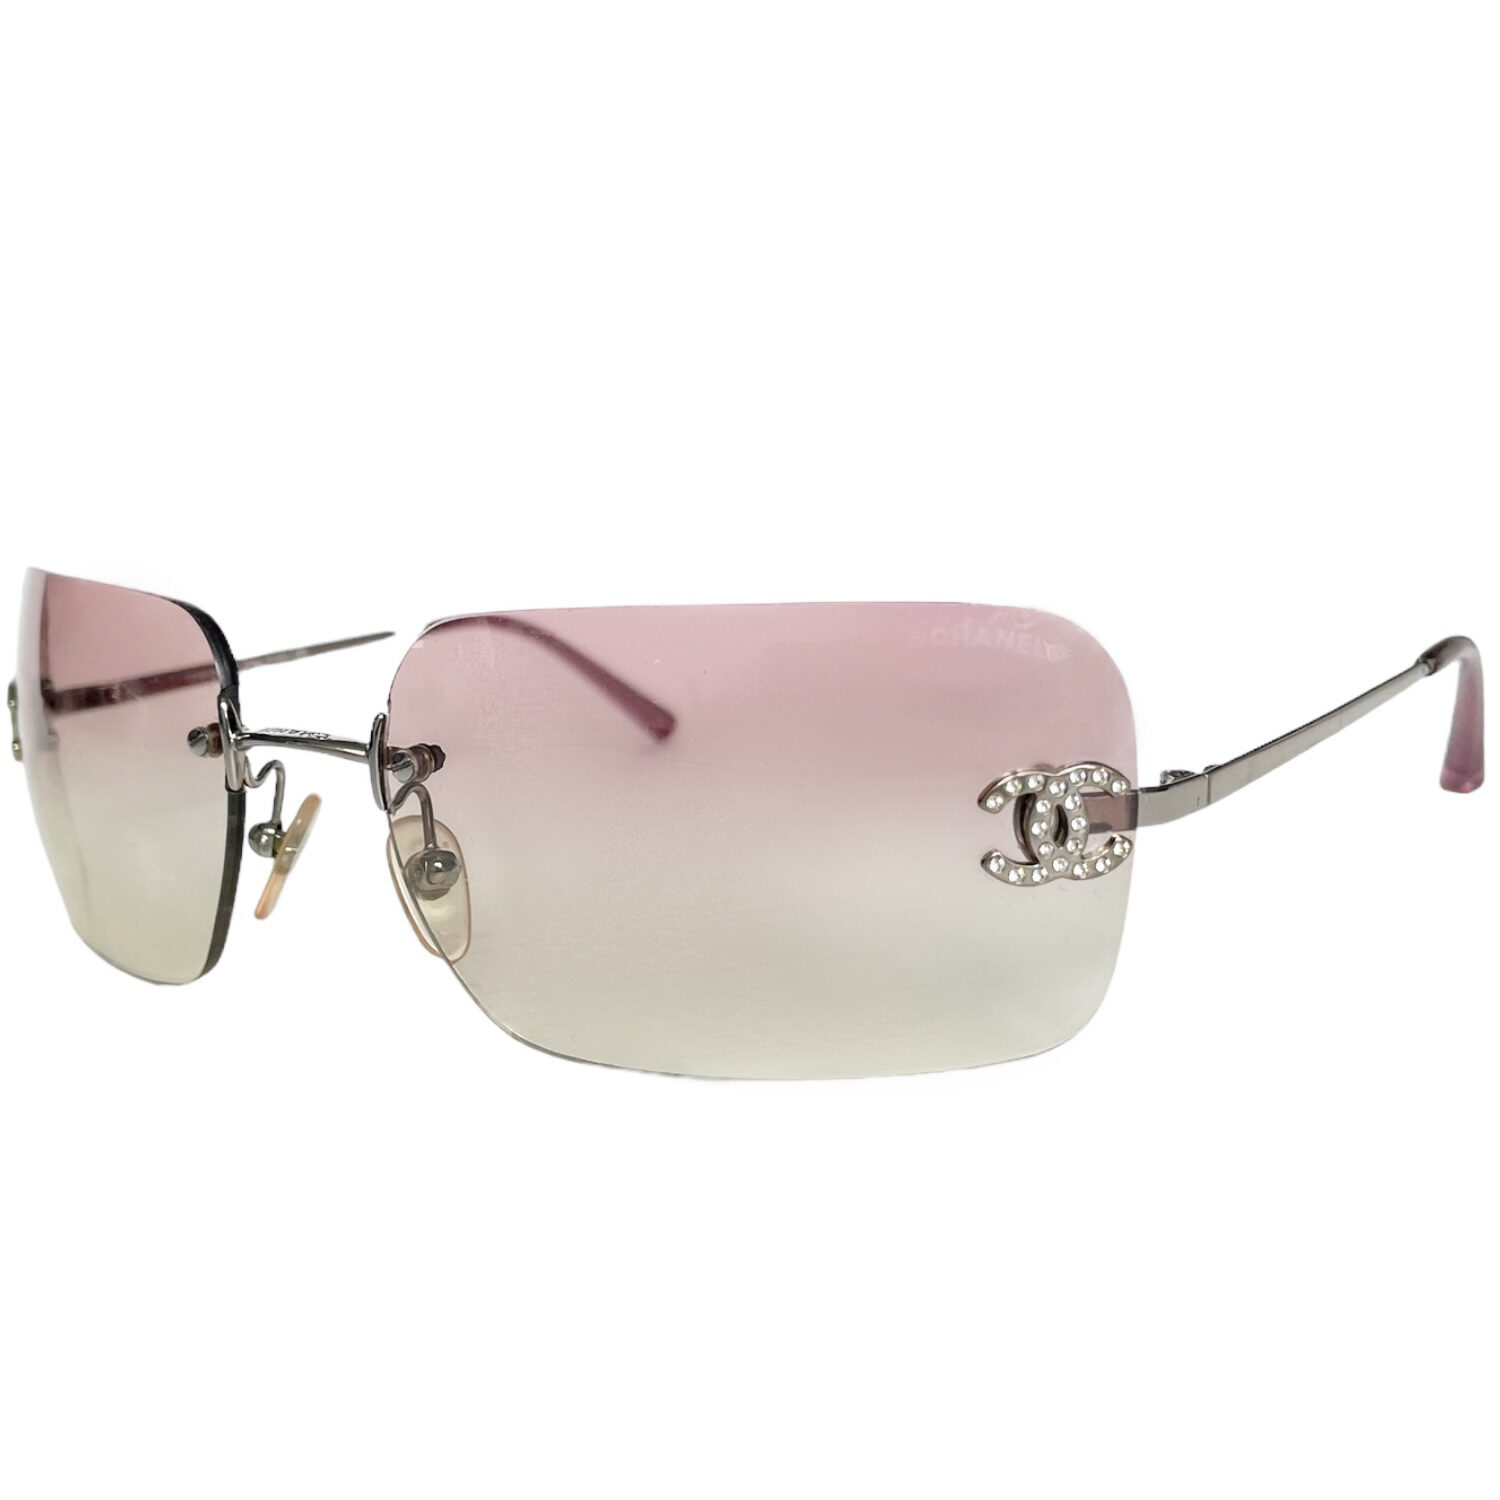 Chanel Diamante Rimless Ombre Sunglasses in Hot Pink / Silver